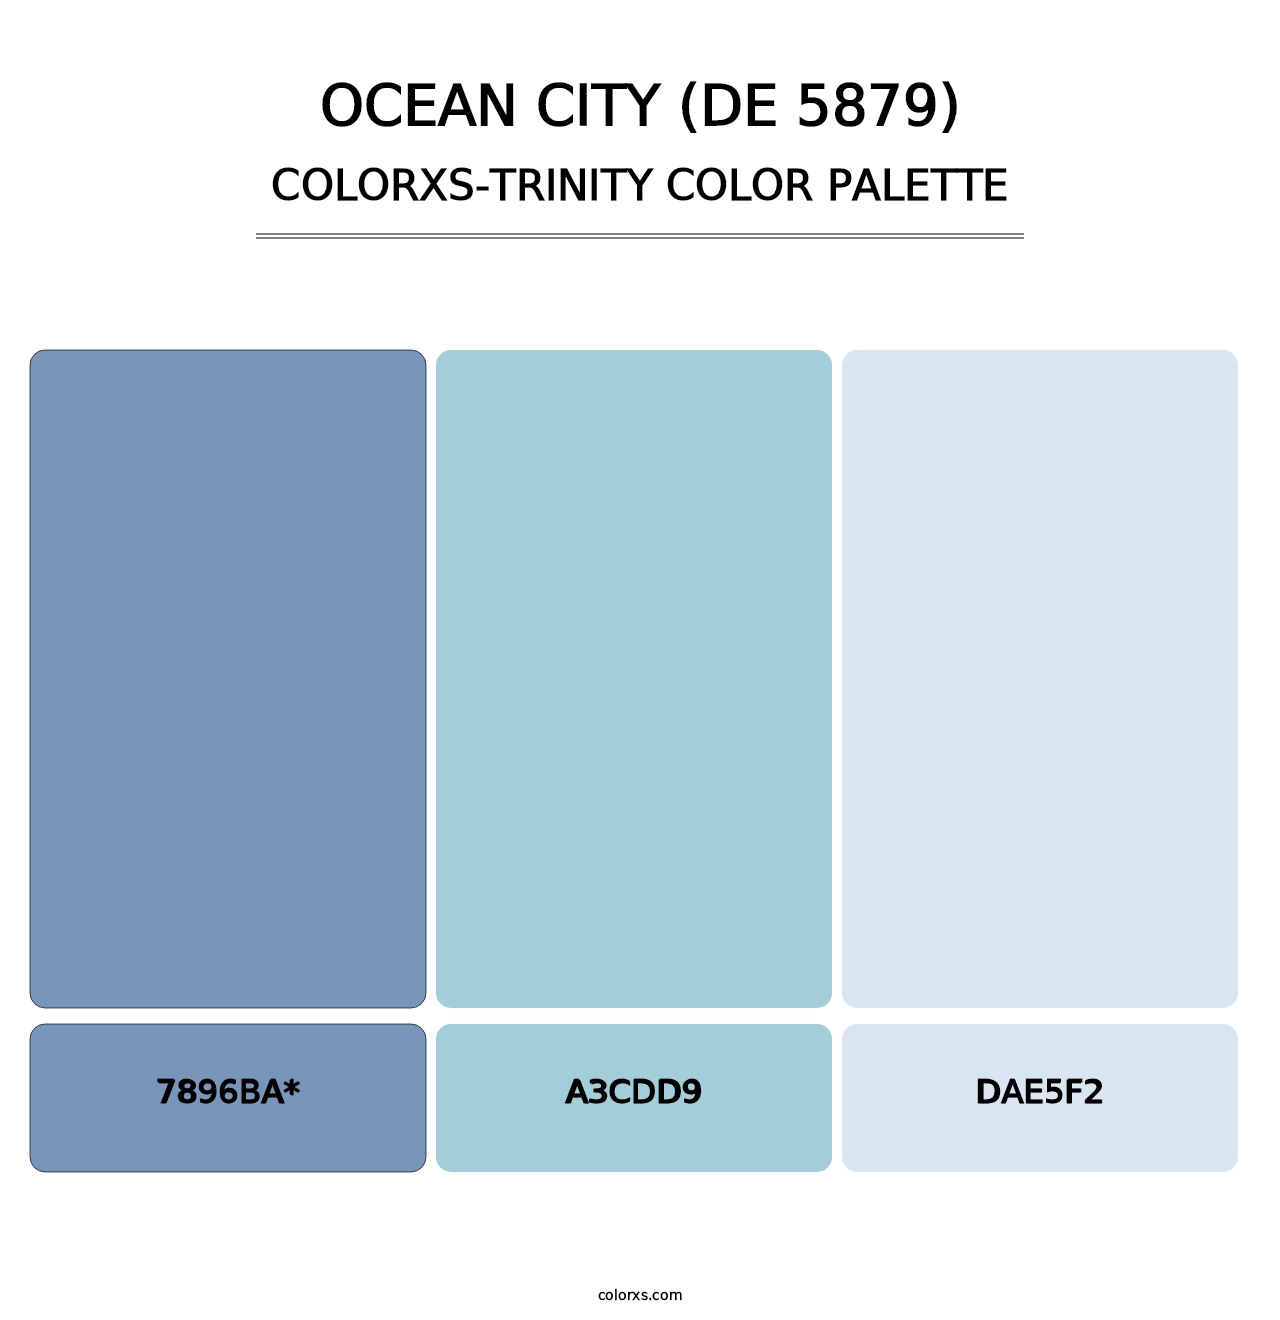 Ocean City (DE 5879) - Colorxs Trinity Palette